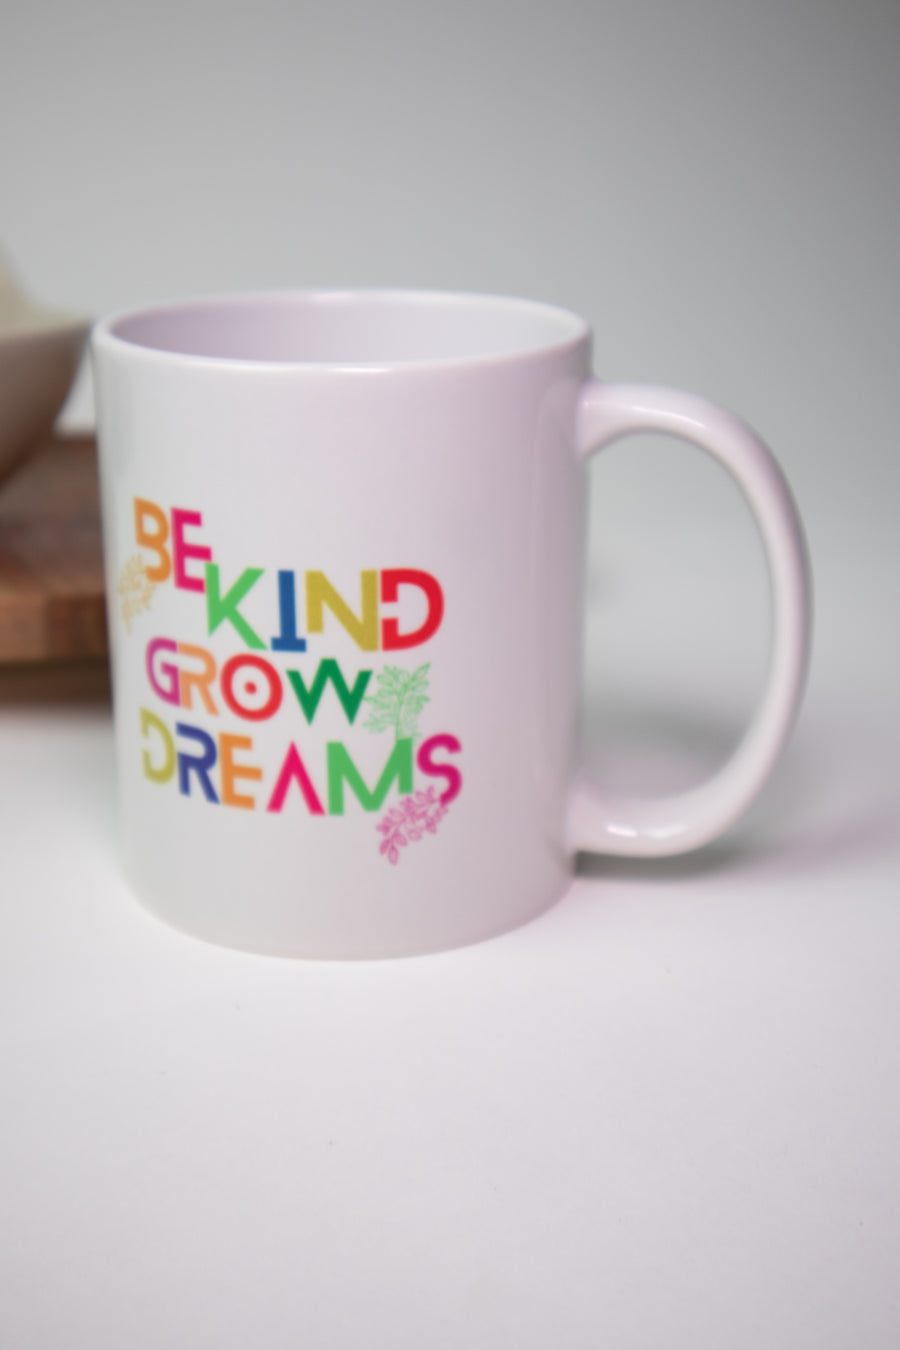 Be Kind Grow Dreams